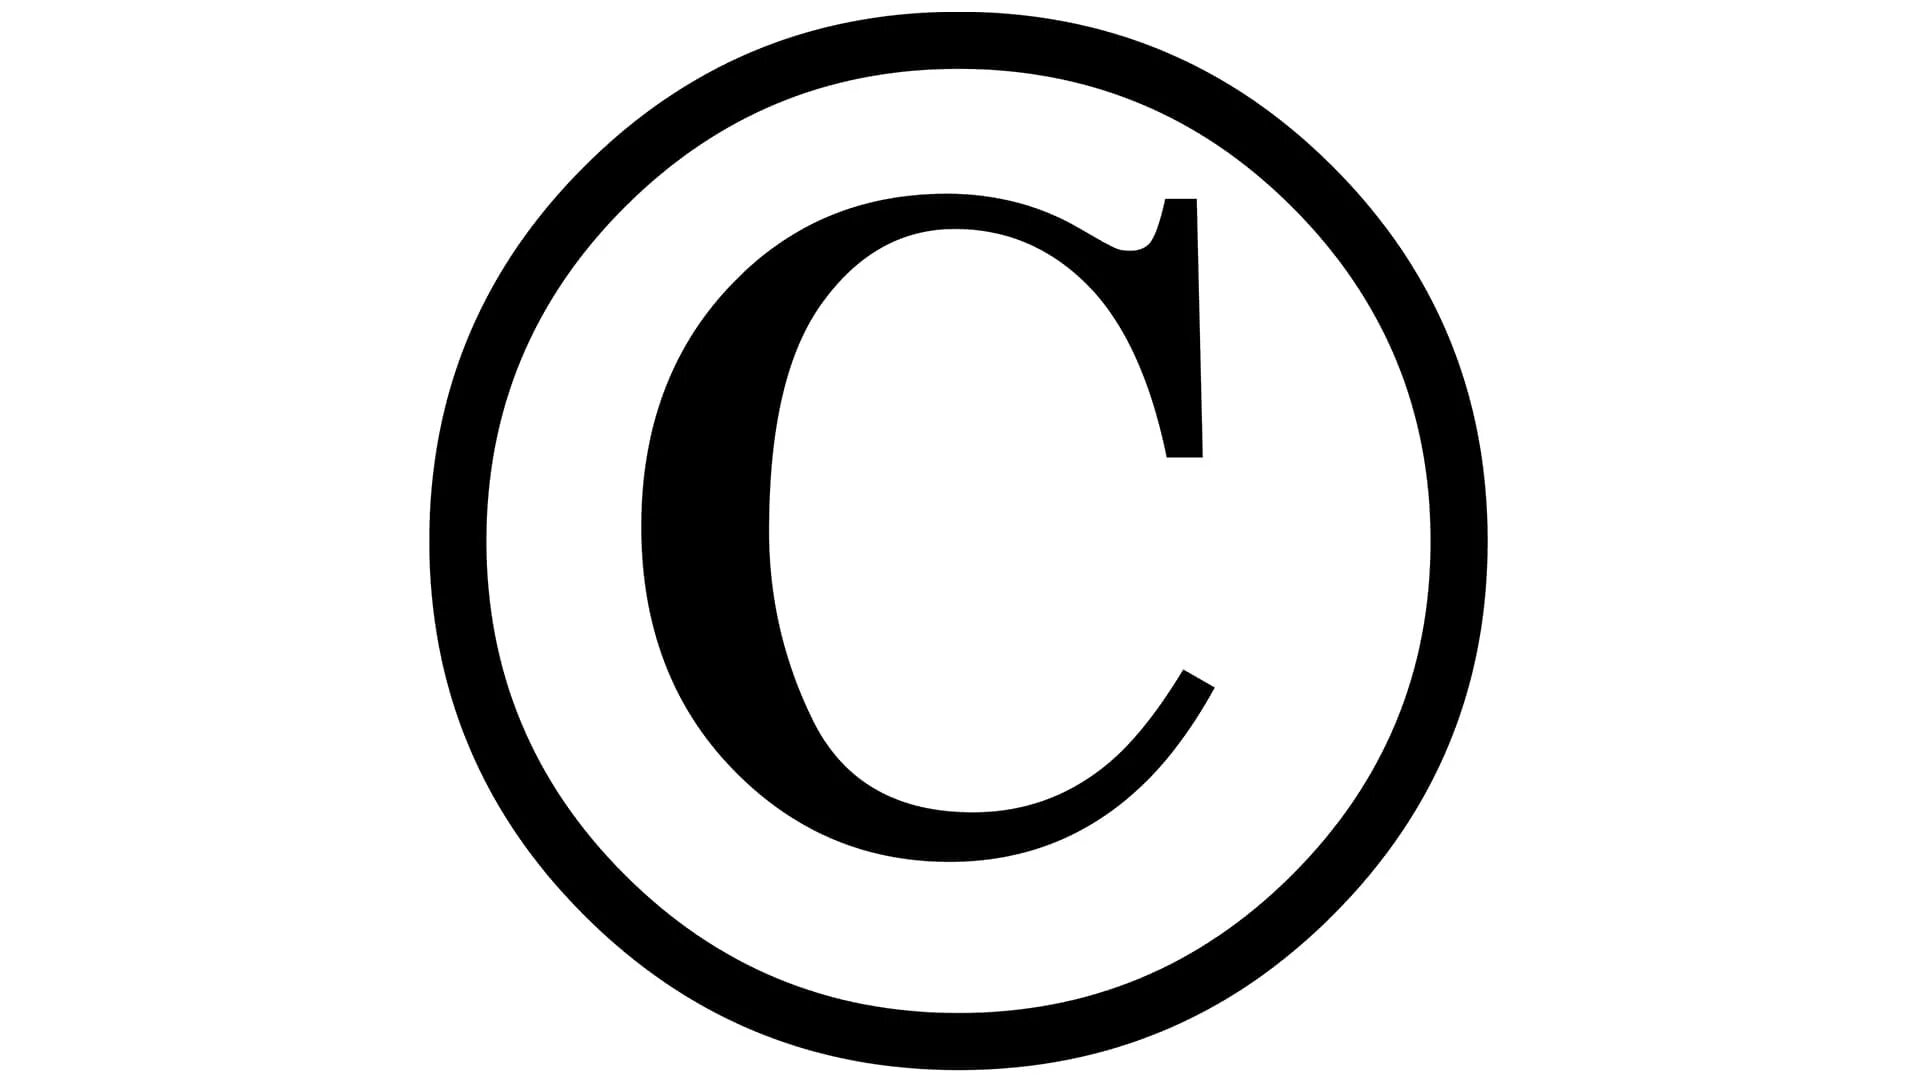 Copyright licenses. Знак копирайта без фона. Буквы в кружочках.